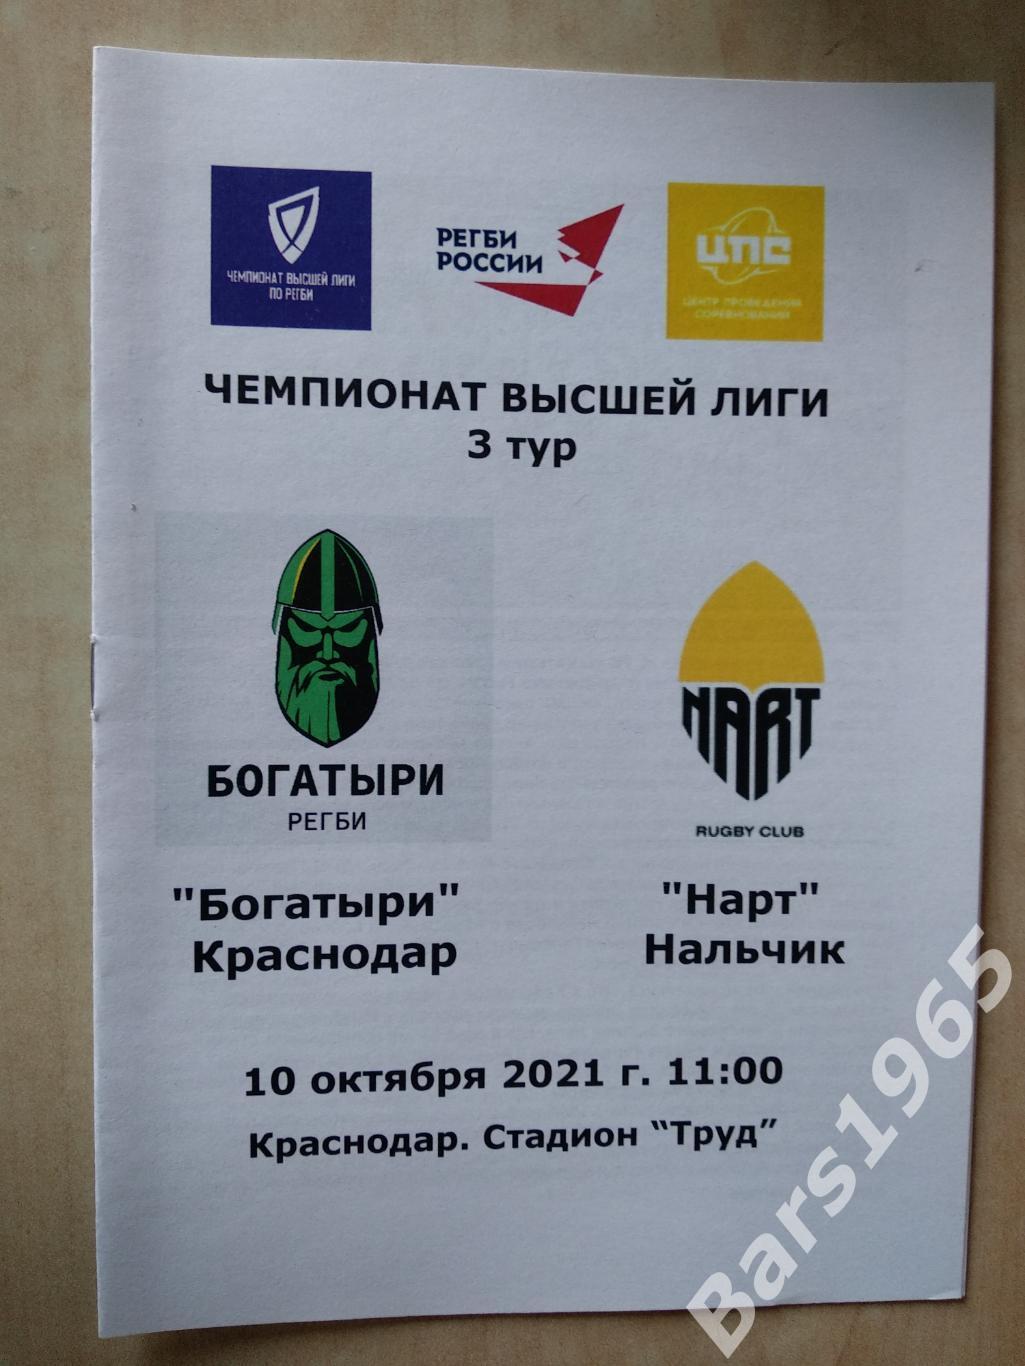 Богатыри Краснодар - Нарт Нальчик 2021 Регби